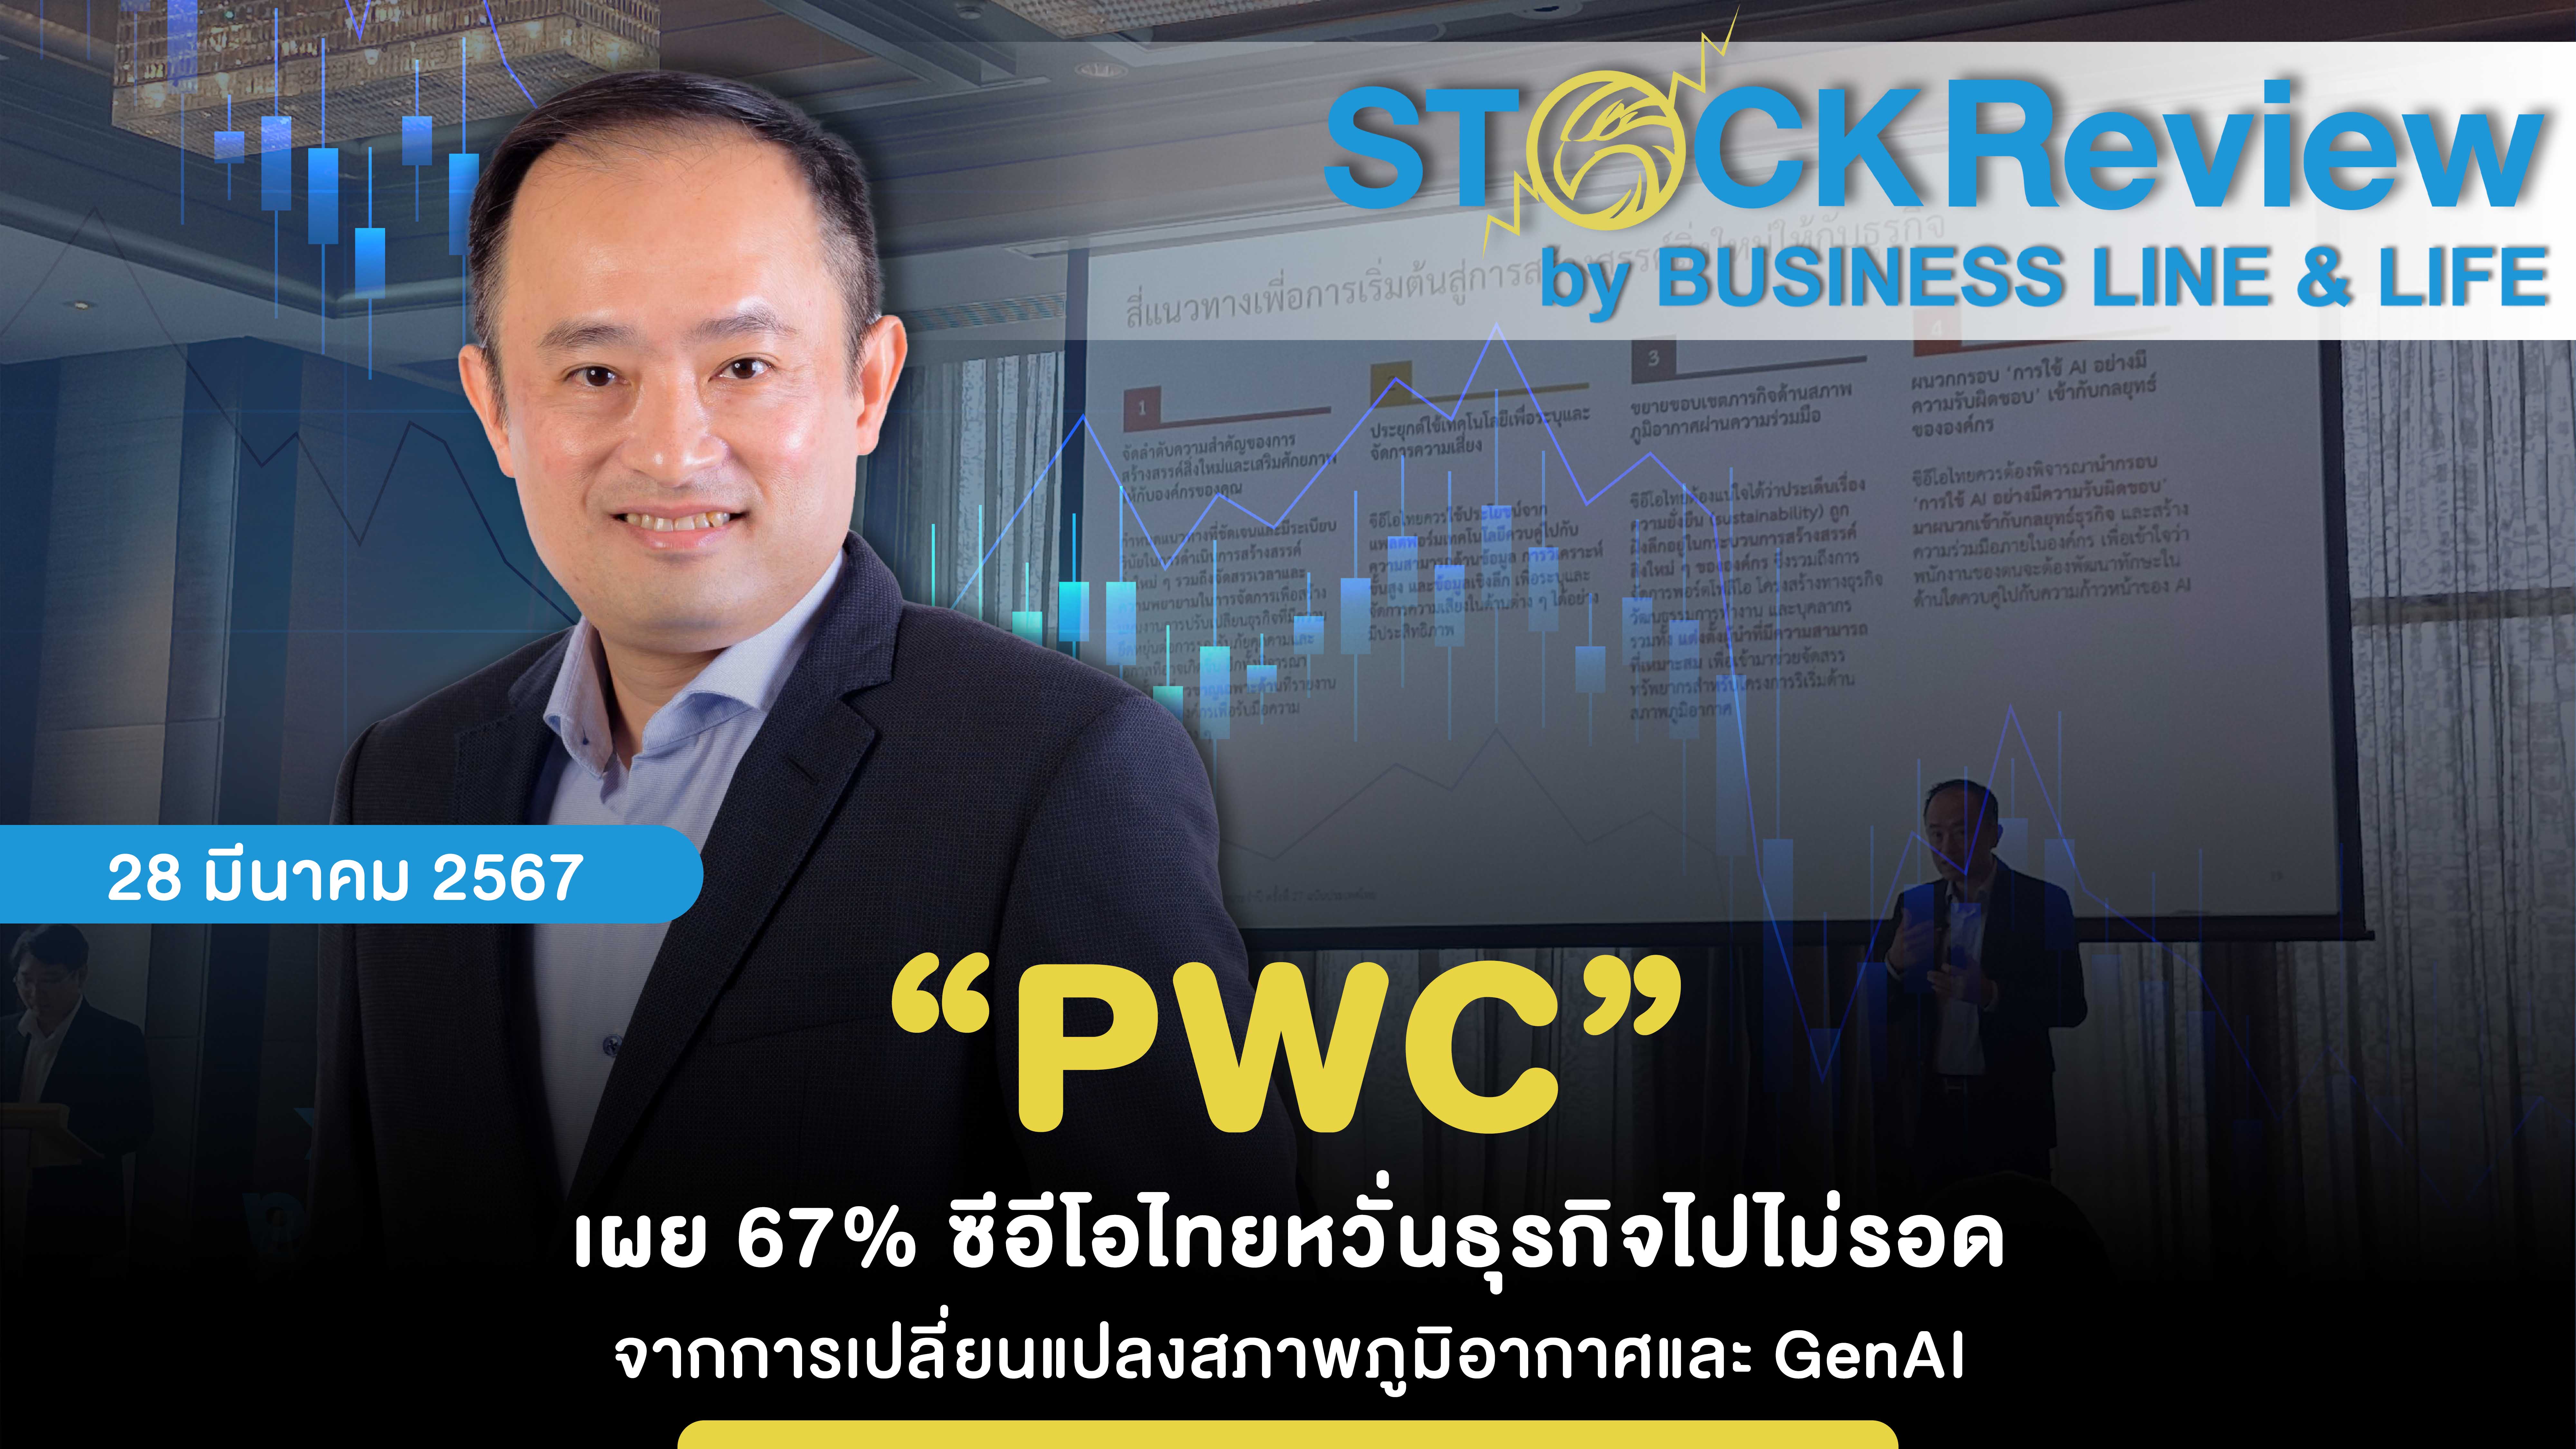 “PWC” เผย 67% ซีอีโอไทยหวั่นธุรกิจไปไม่รอด จากการเปลี่ยนแปลงสภาพภูมิอากาศและ GenAI